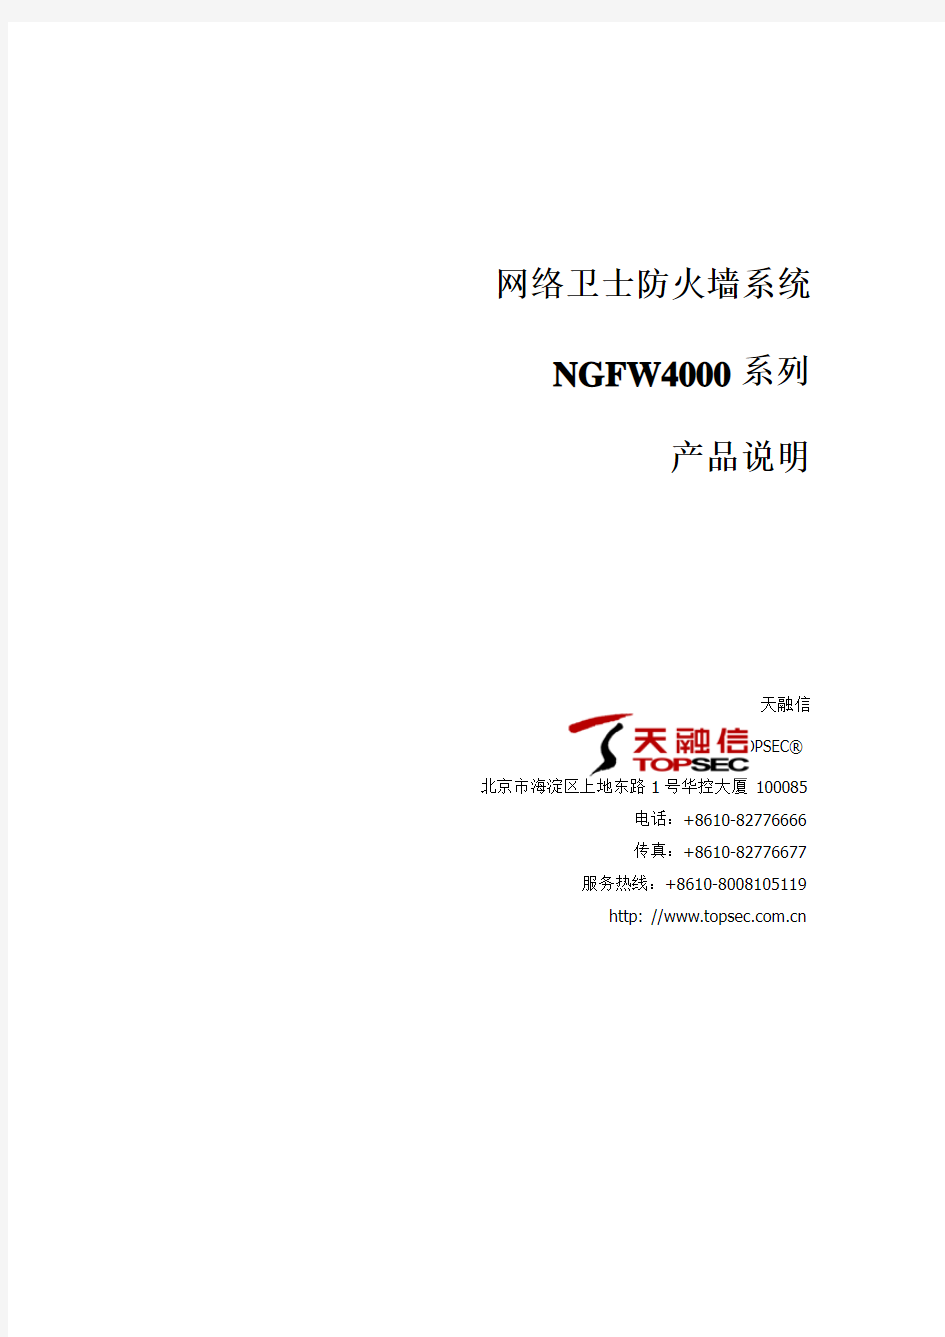 产品说明-网络卫士防火墙NGFW4000系列型号参数